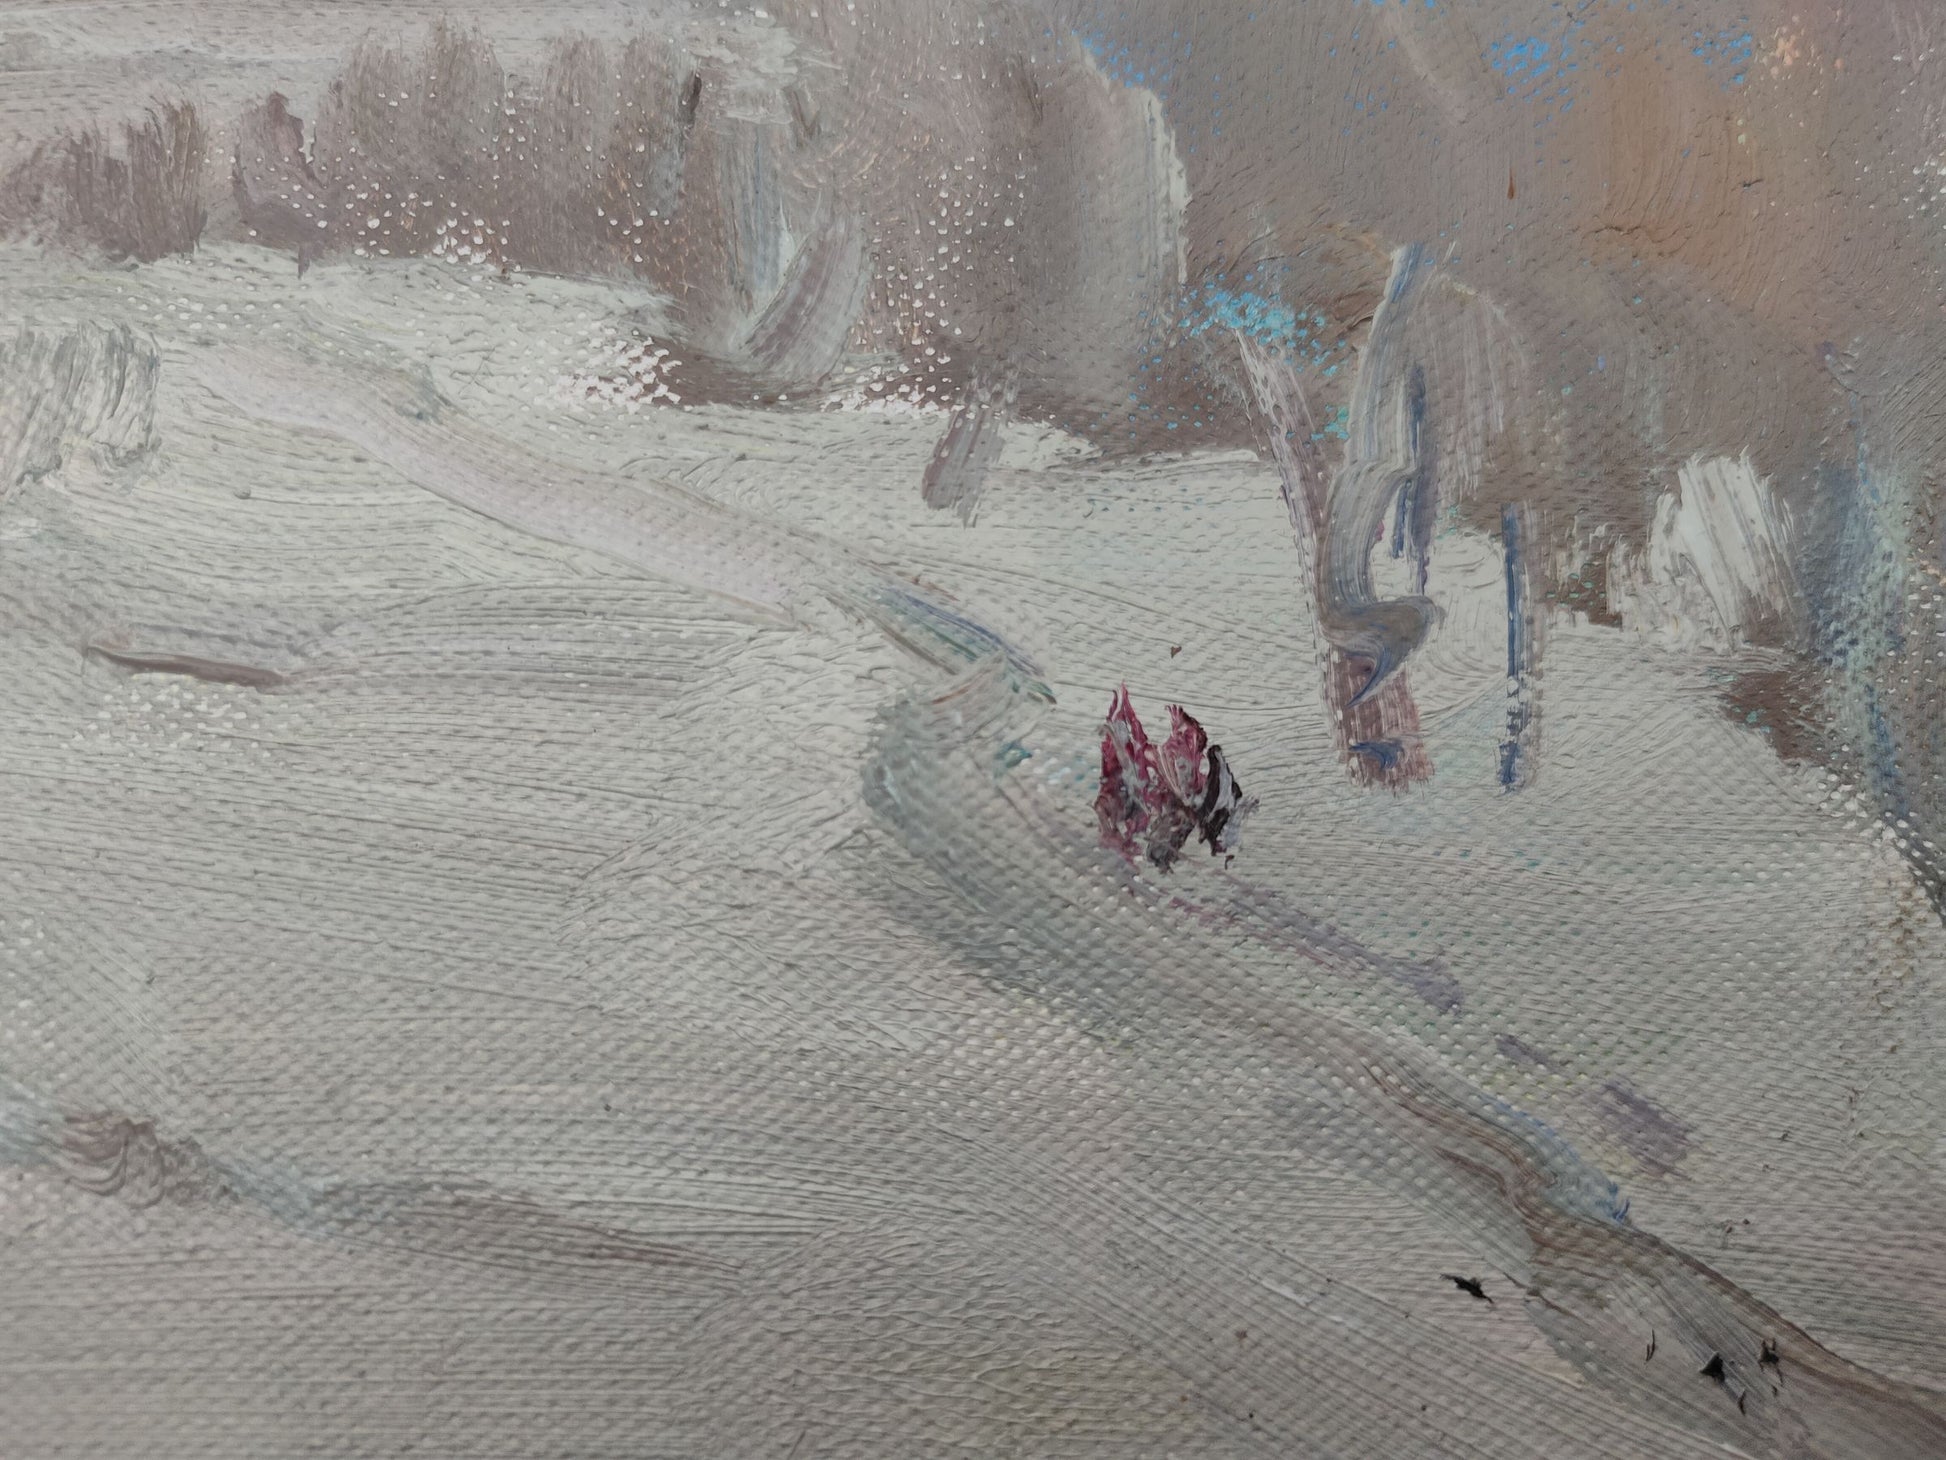 V. V. Mishurovsky's portrayal of a winter road in oil